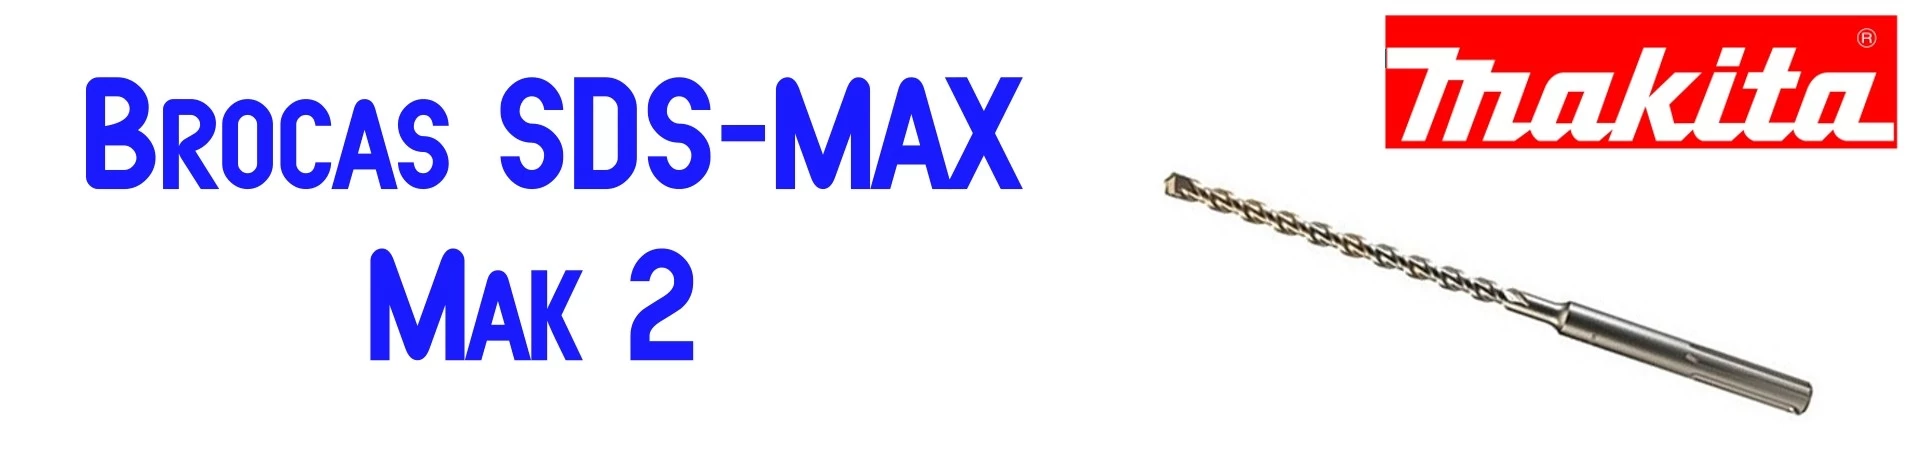 ONLINE Accesorios Makita al Mejor Precio. Broca SDS-MAX Mak 2